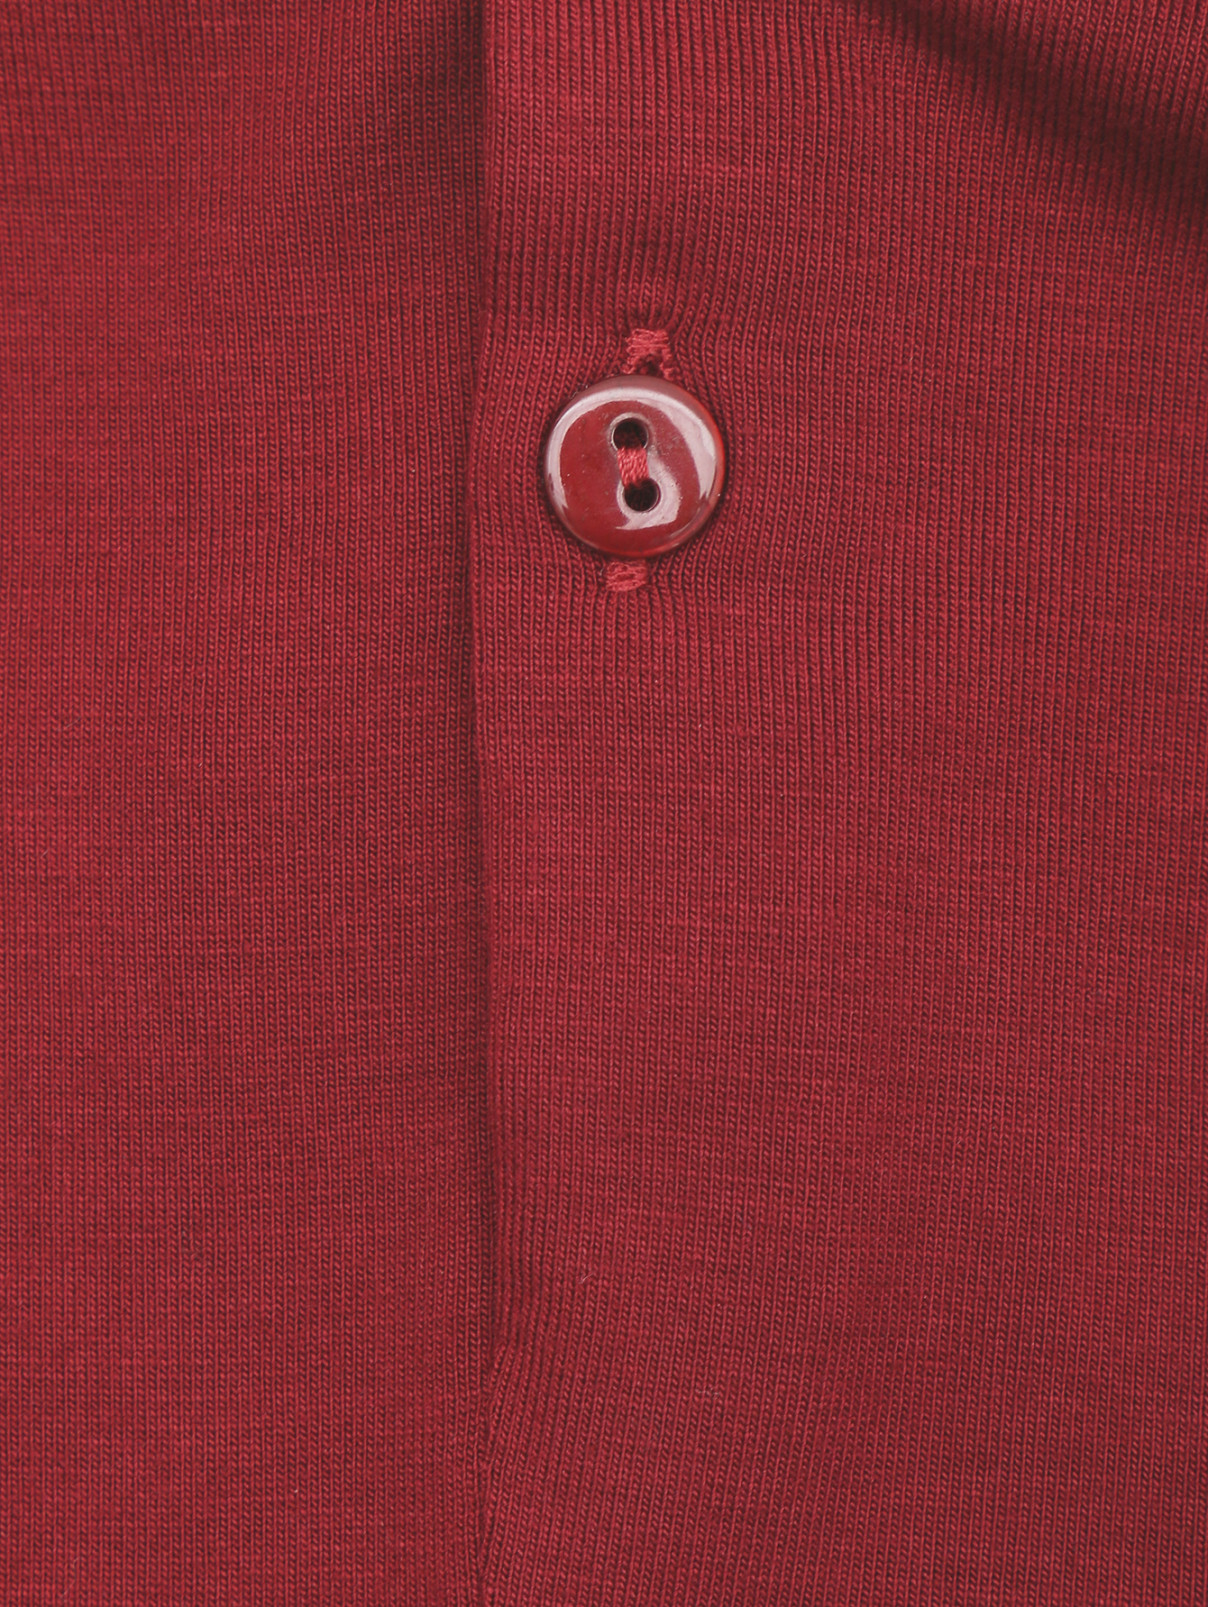 Блуза трикотажная с оборками Aletta Couture  –  Деталь  – Цвет:  Красный